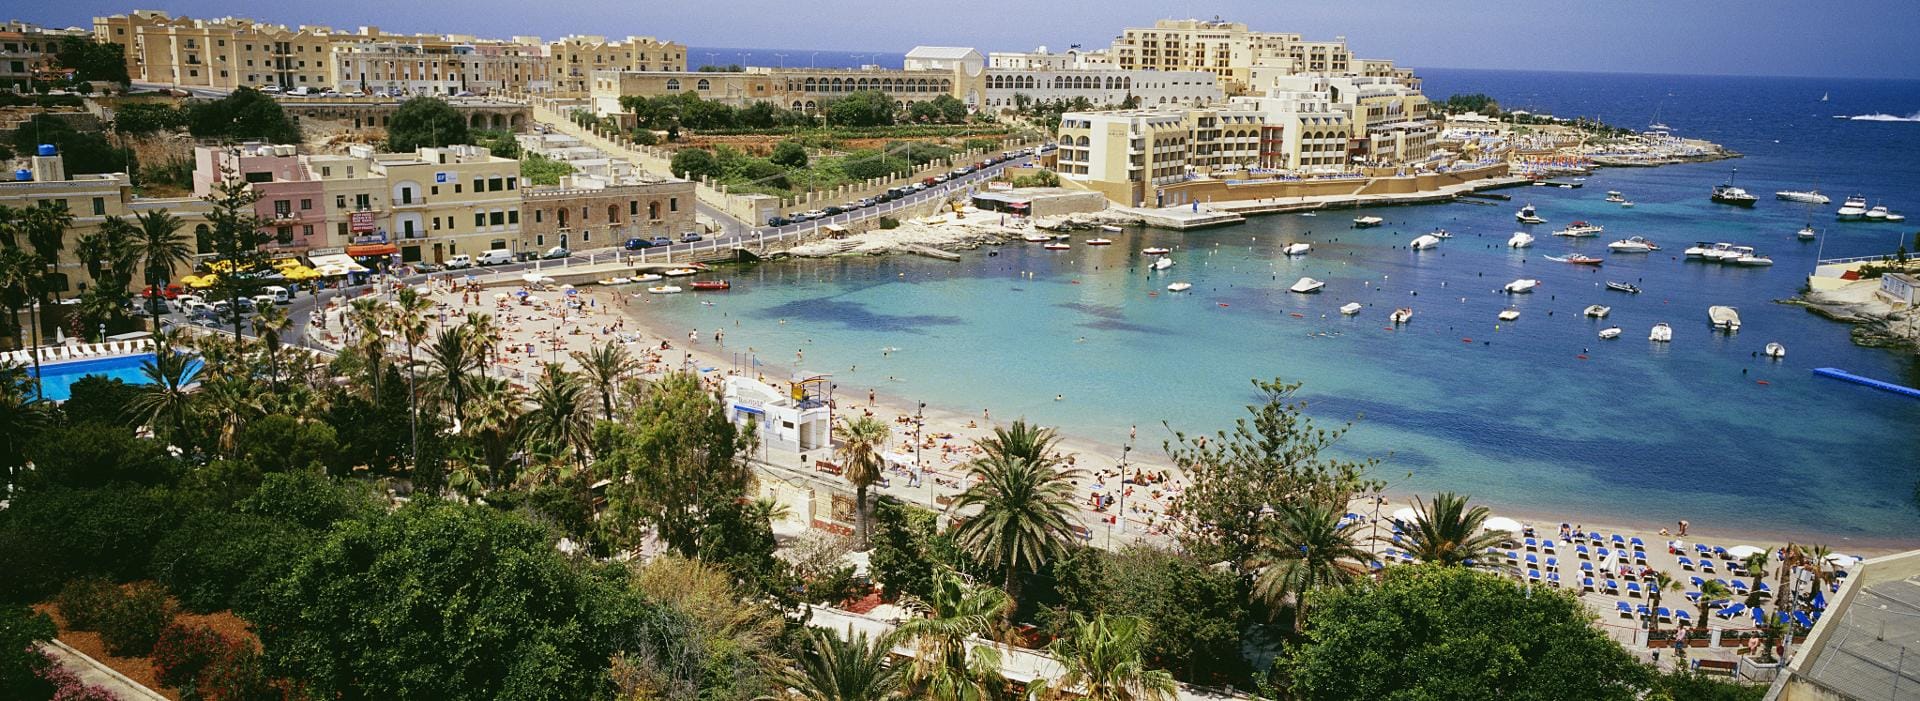 Blick über die St. George's Bay auf Malta.